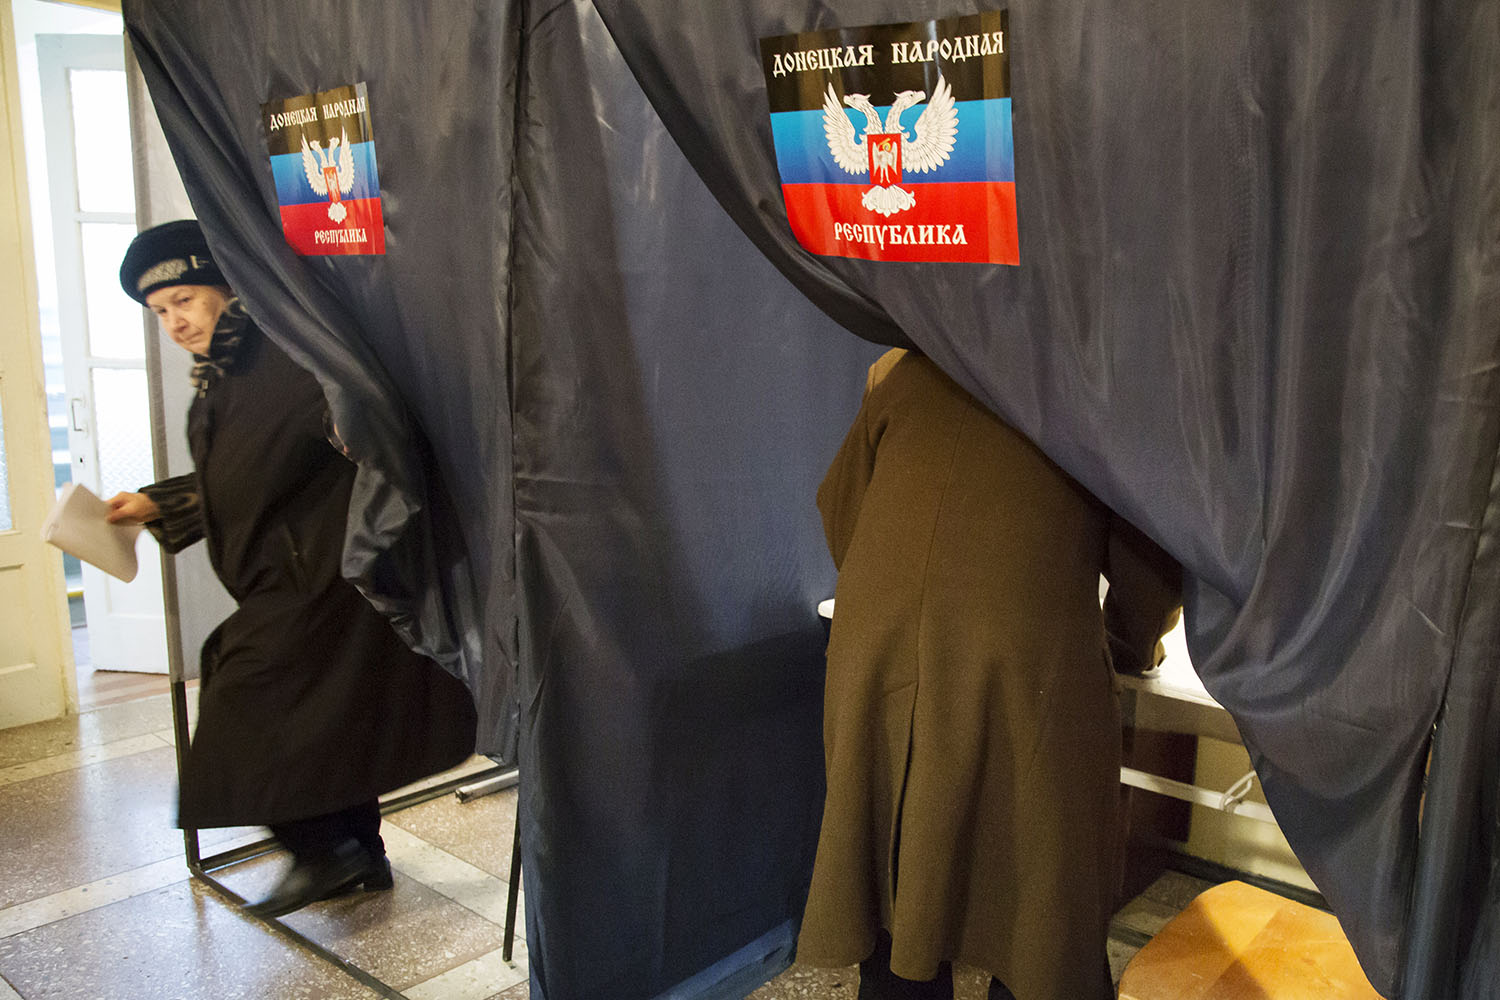 El primer ministro de Donetsk gana las elecciones en el este de Ucrania